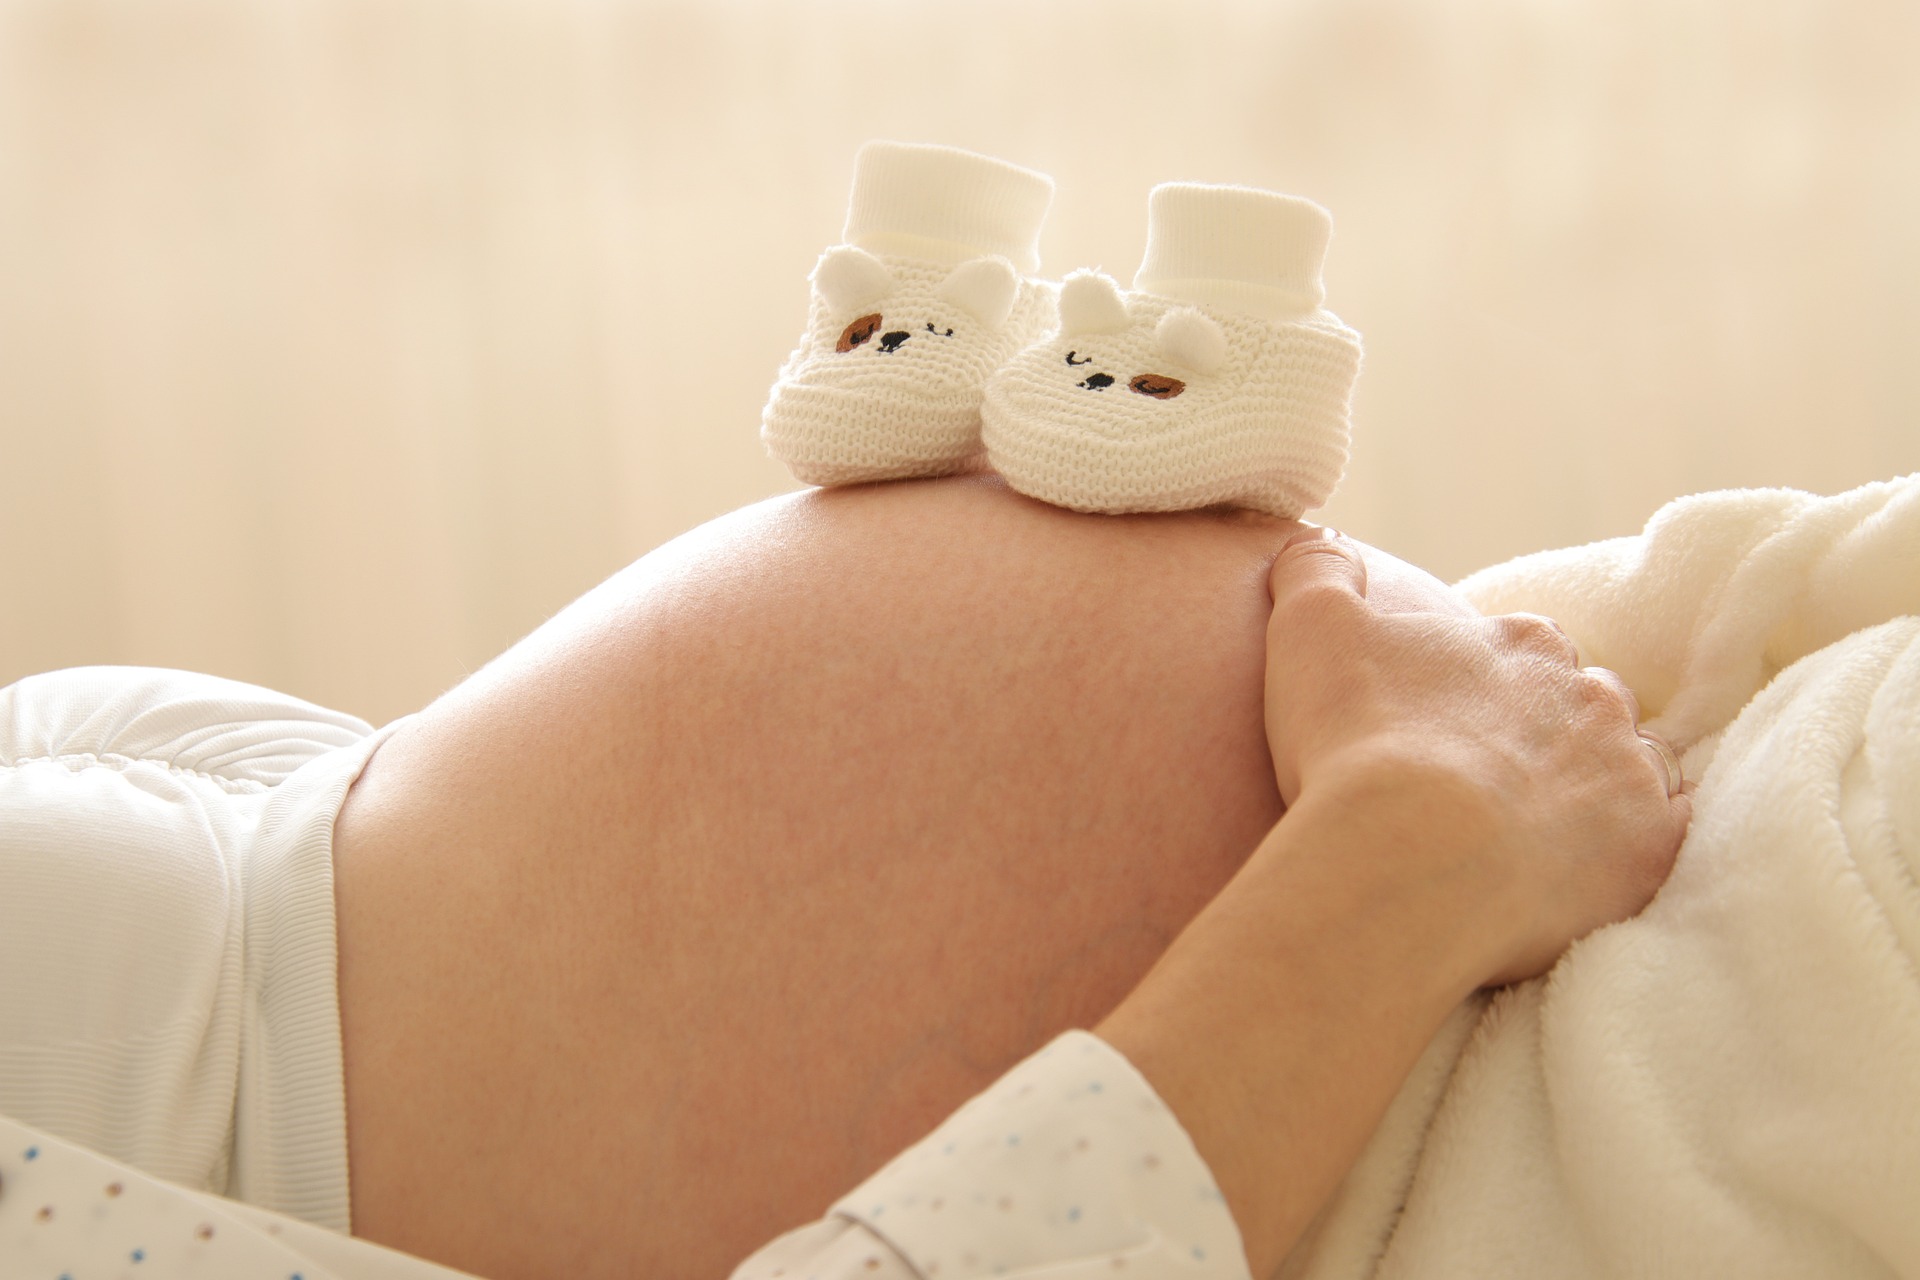 Akupunkturpunkte im unteren Rücken und im unteren Bauch sollten während der Schwangerschaft vermieden werden